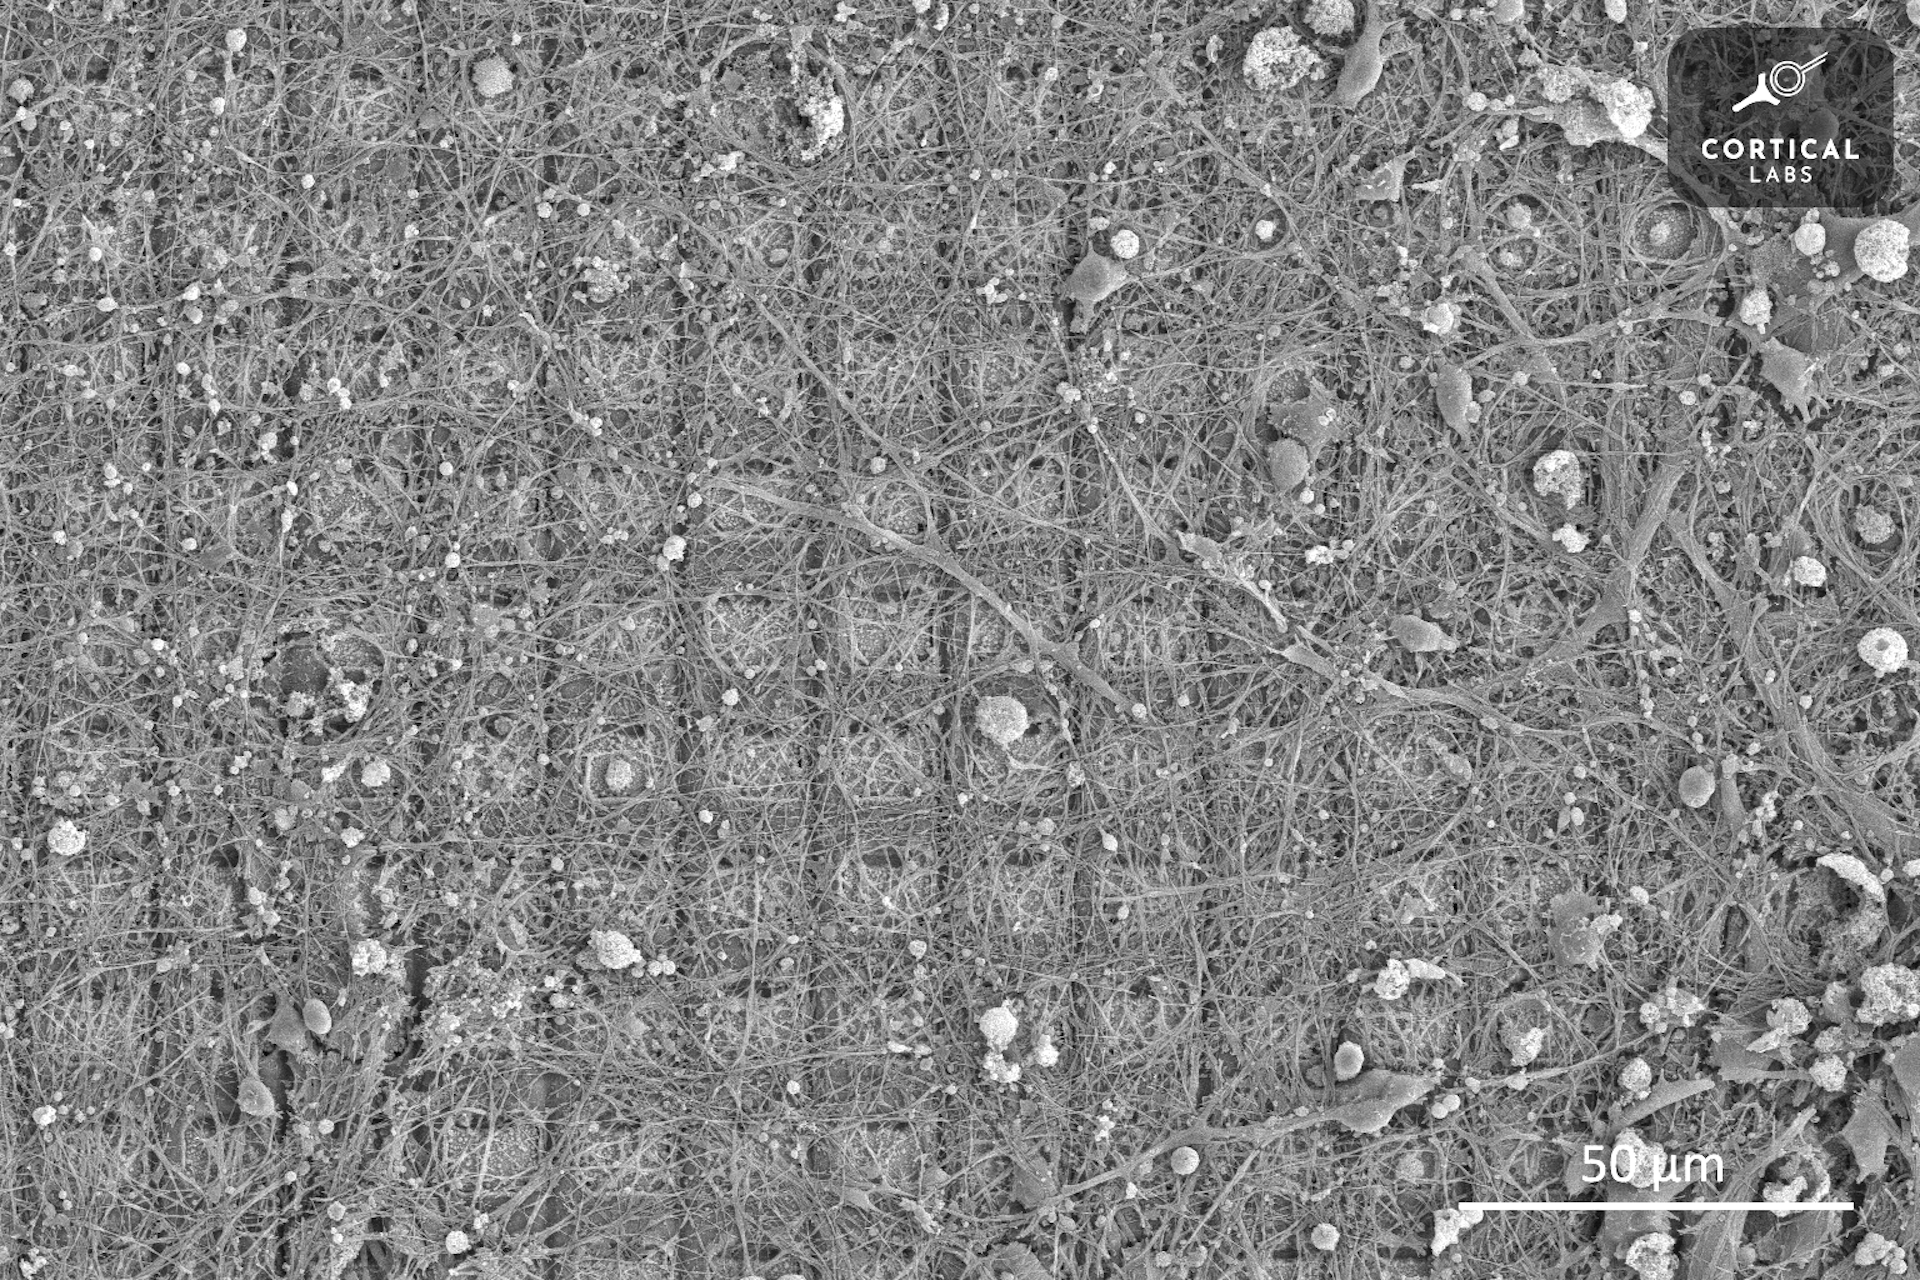 Uma imagem de microscópio mostra uma grade de quadrados cobertos por um crescimento irregular de neurônios semelhantes a filamentos.